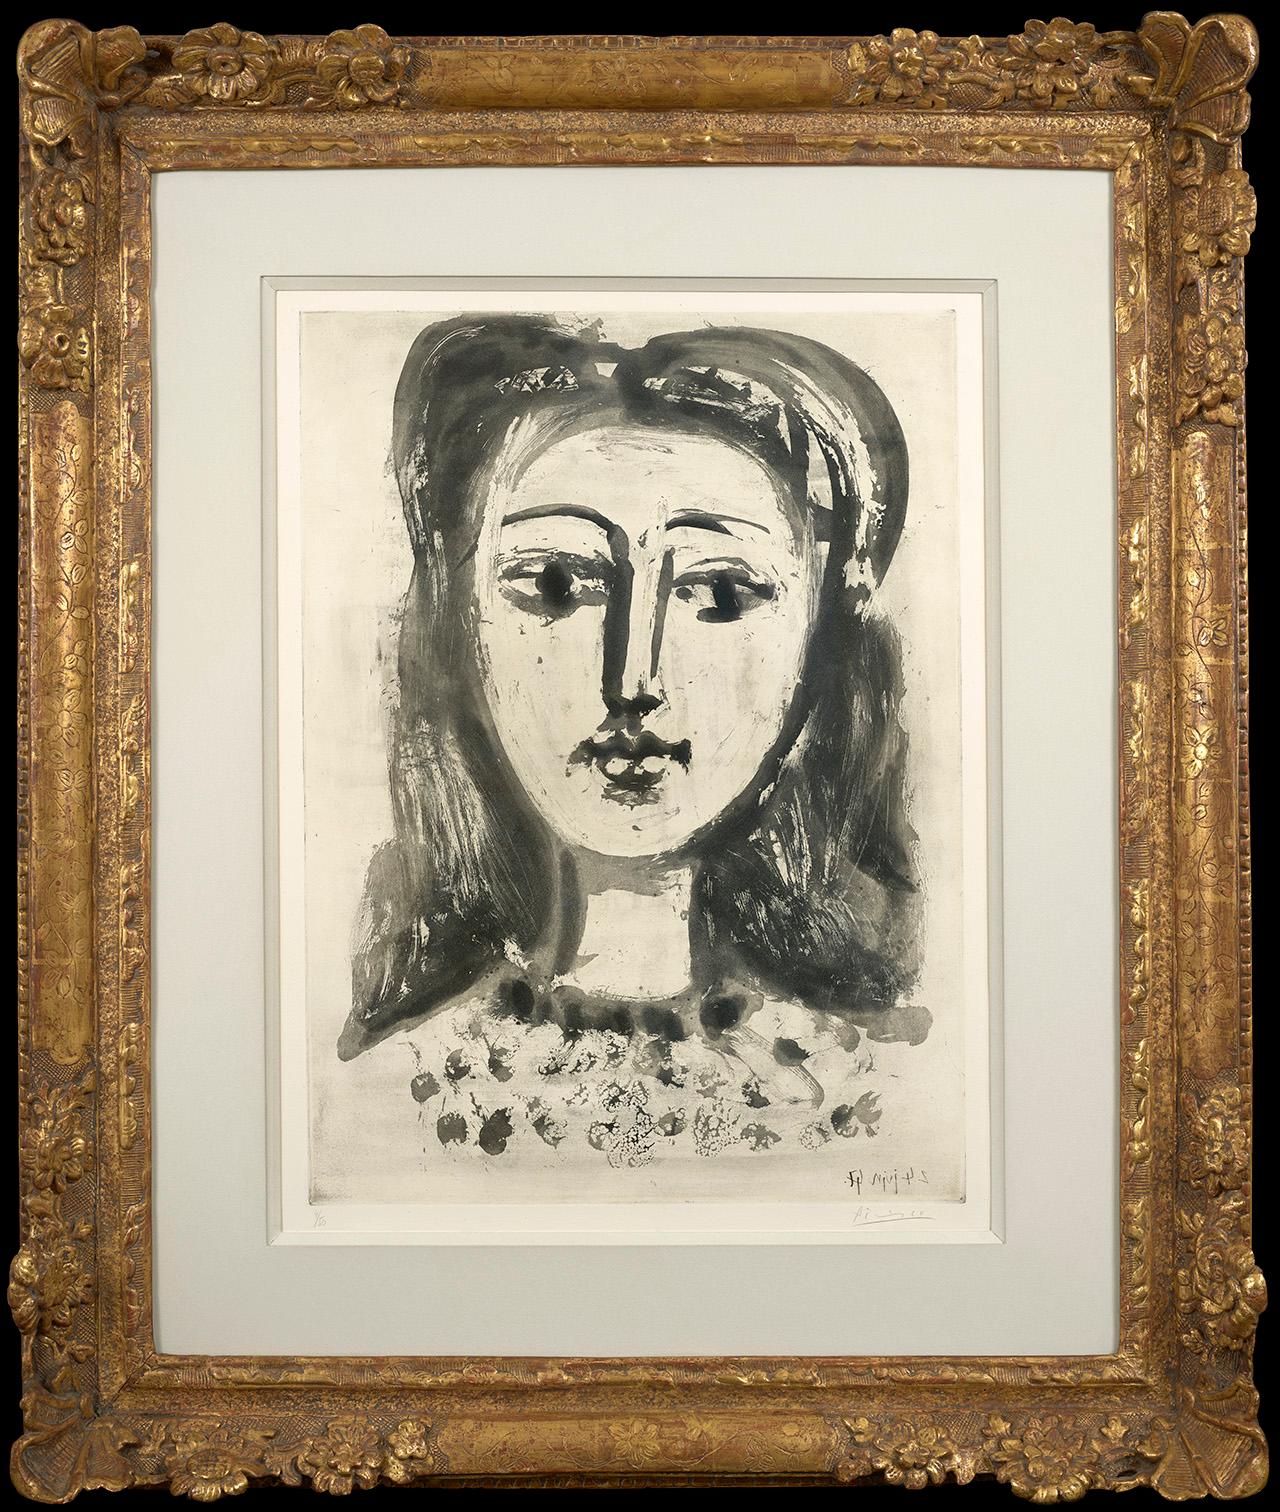 Portrait de Francoise aux Cheveux Floux - Original Aquatint print  - Modern Print by Pablo Picasso